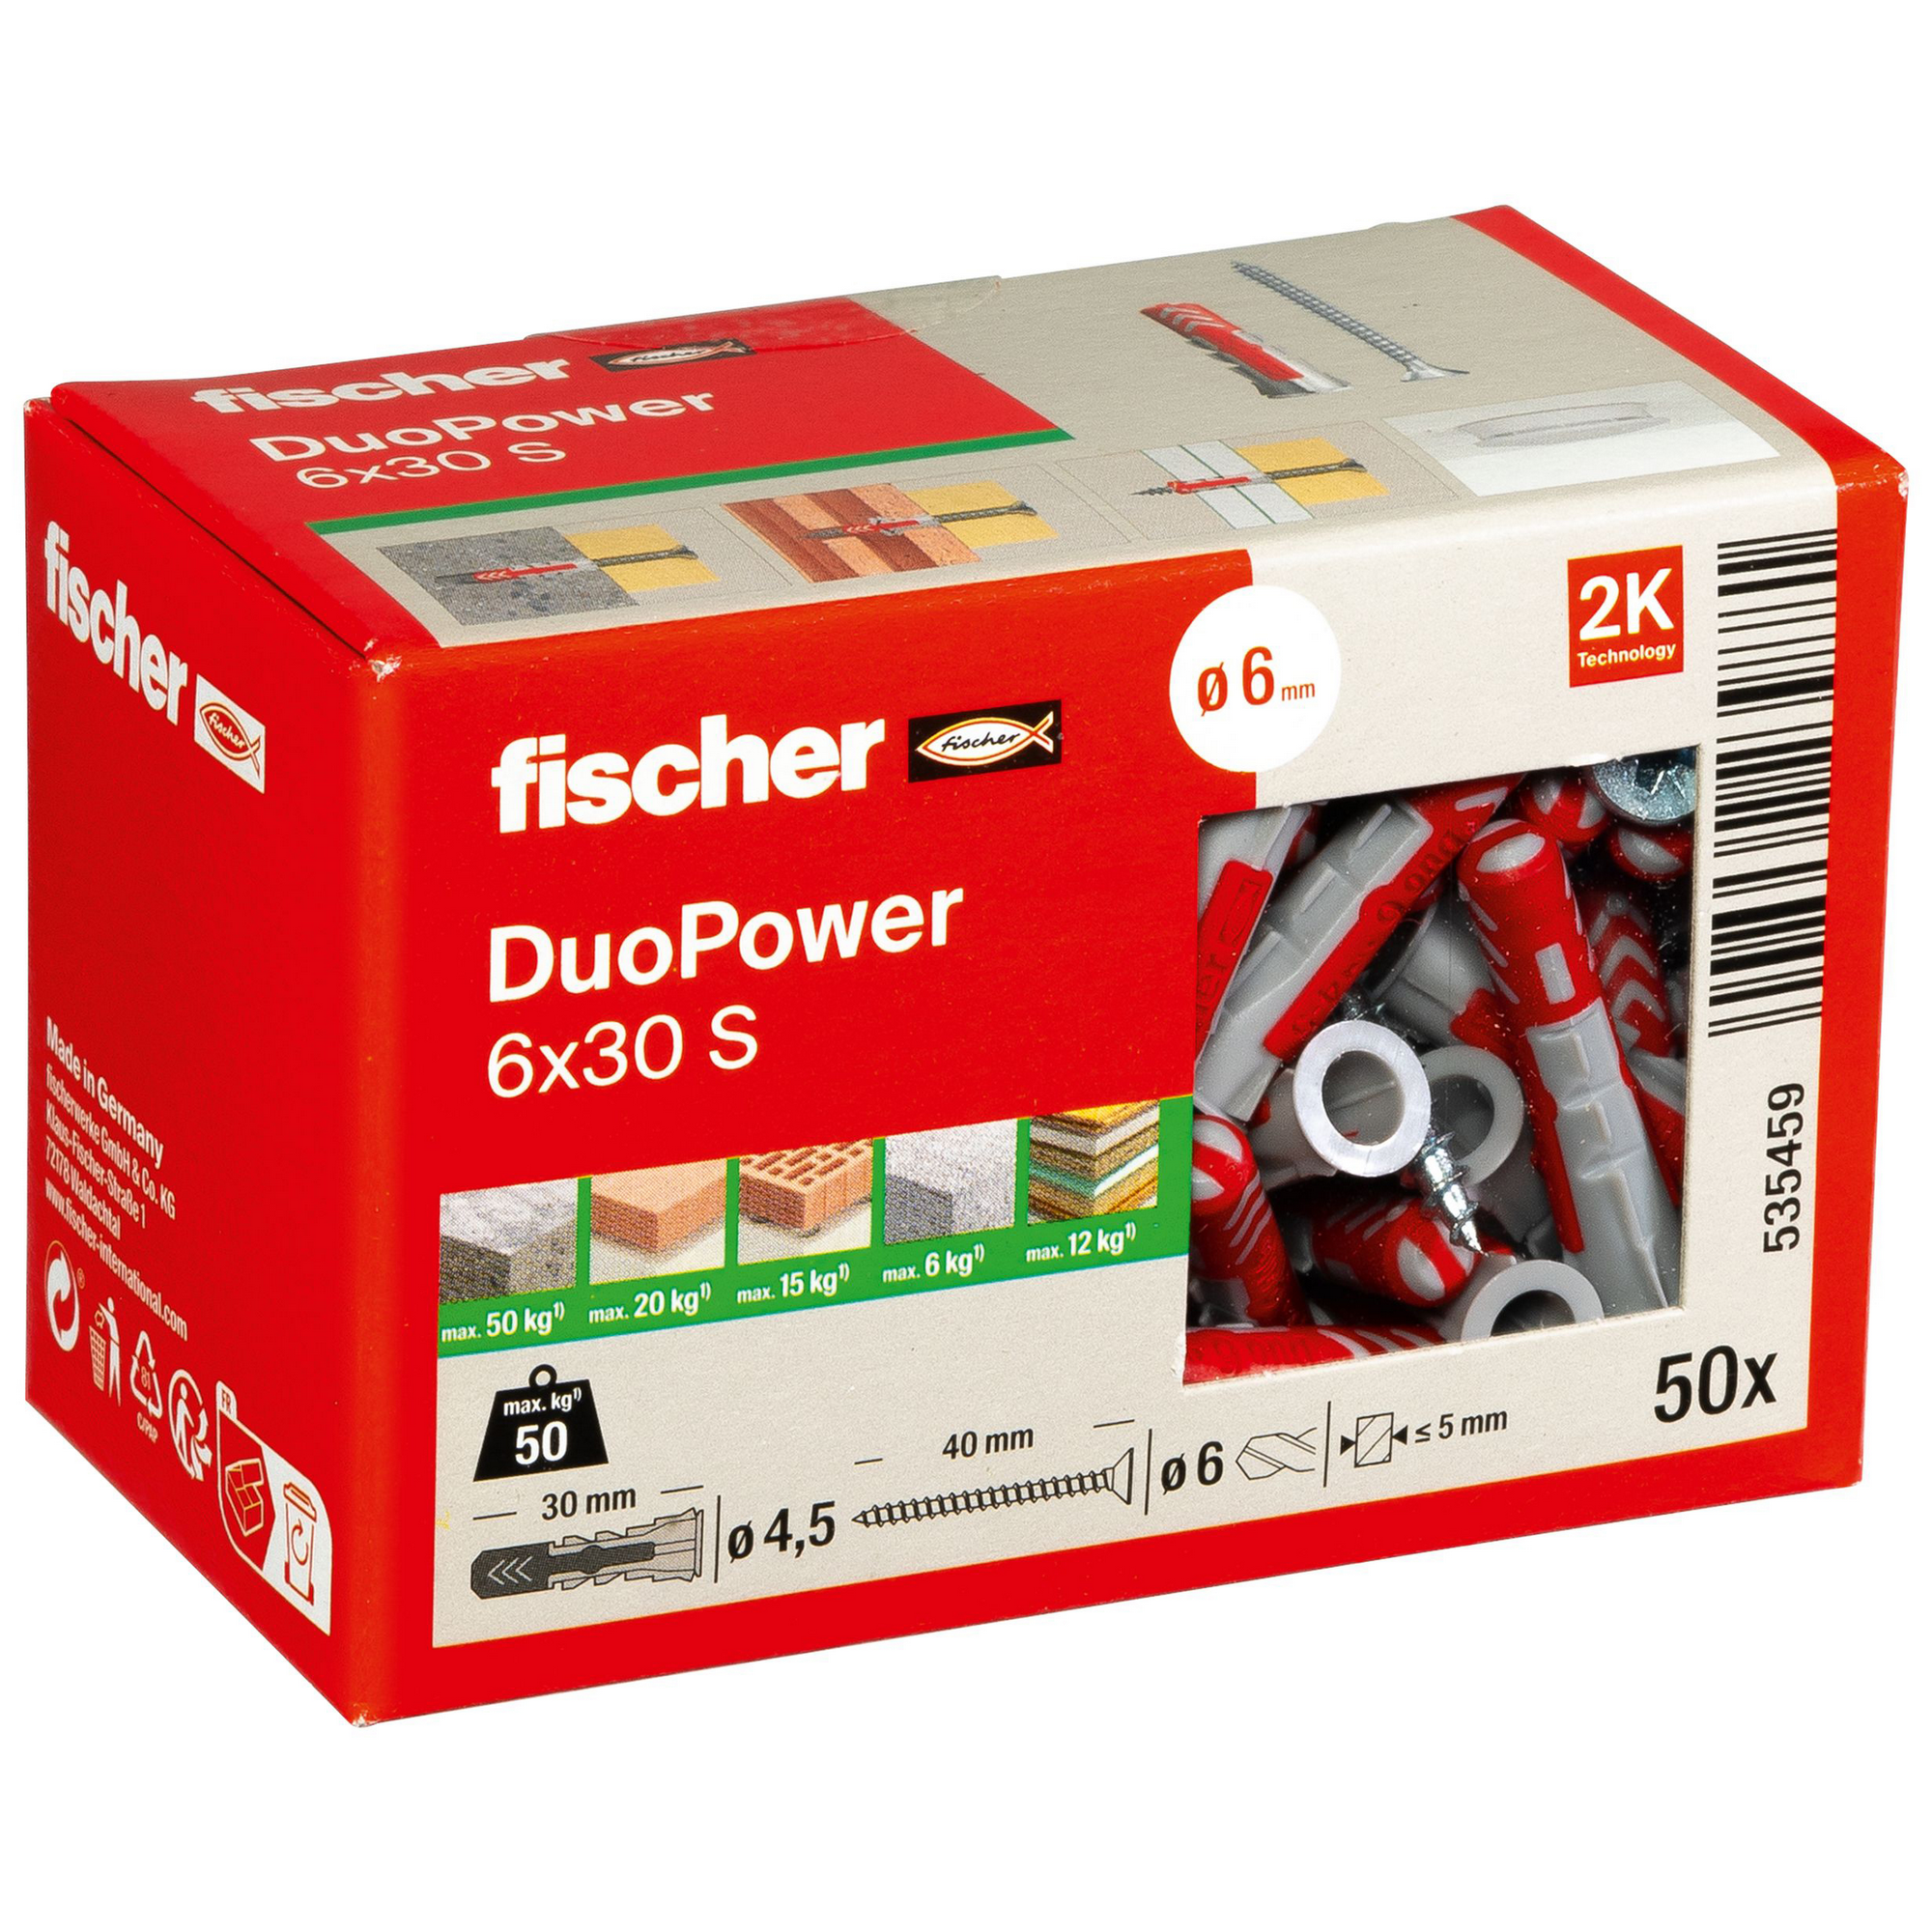 fischer DUOPOWER 6 x 30 S LD mit Schraube 50 Stück + product picture